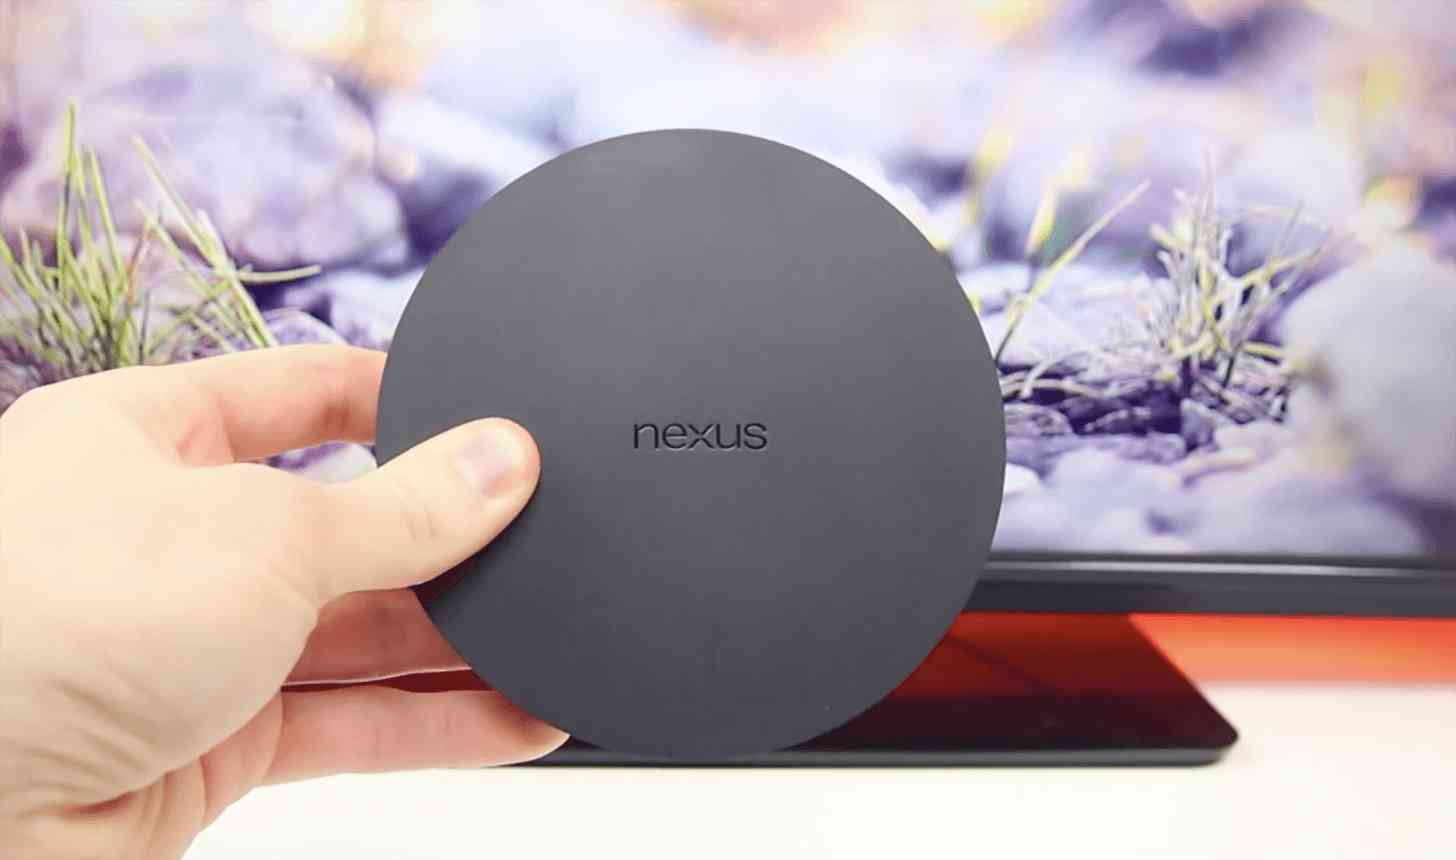 Google Nexus Player hands on